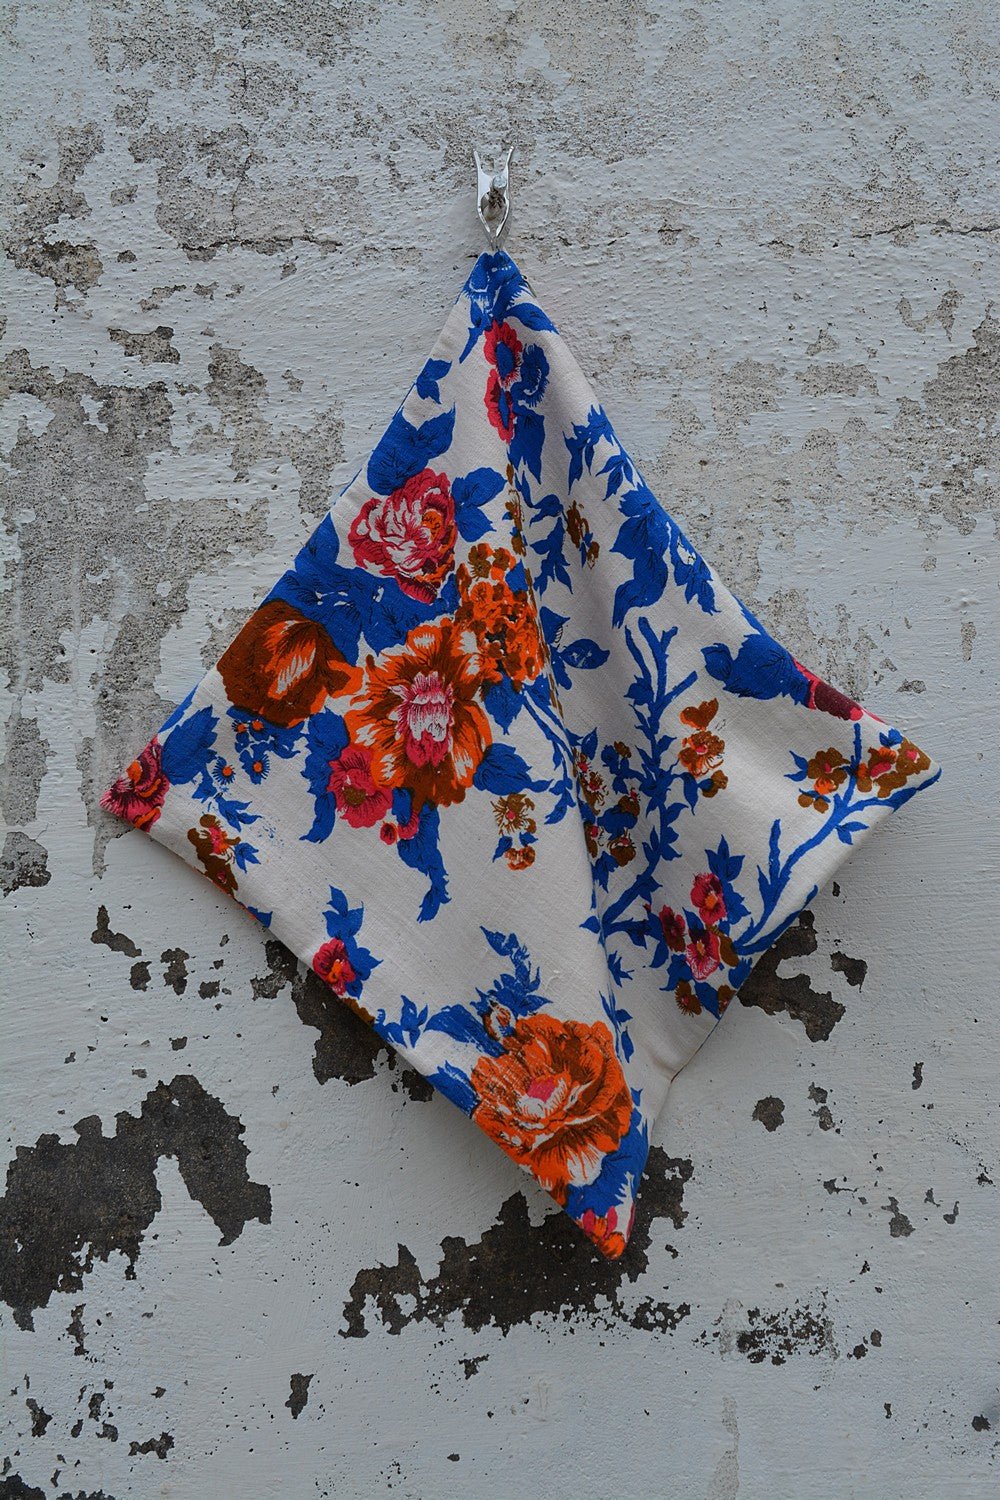 Floral Cushion Cover. - metaphorracha